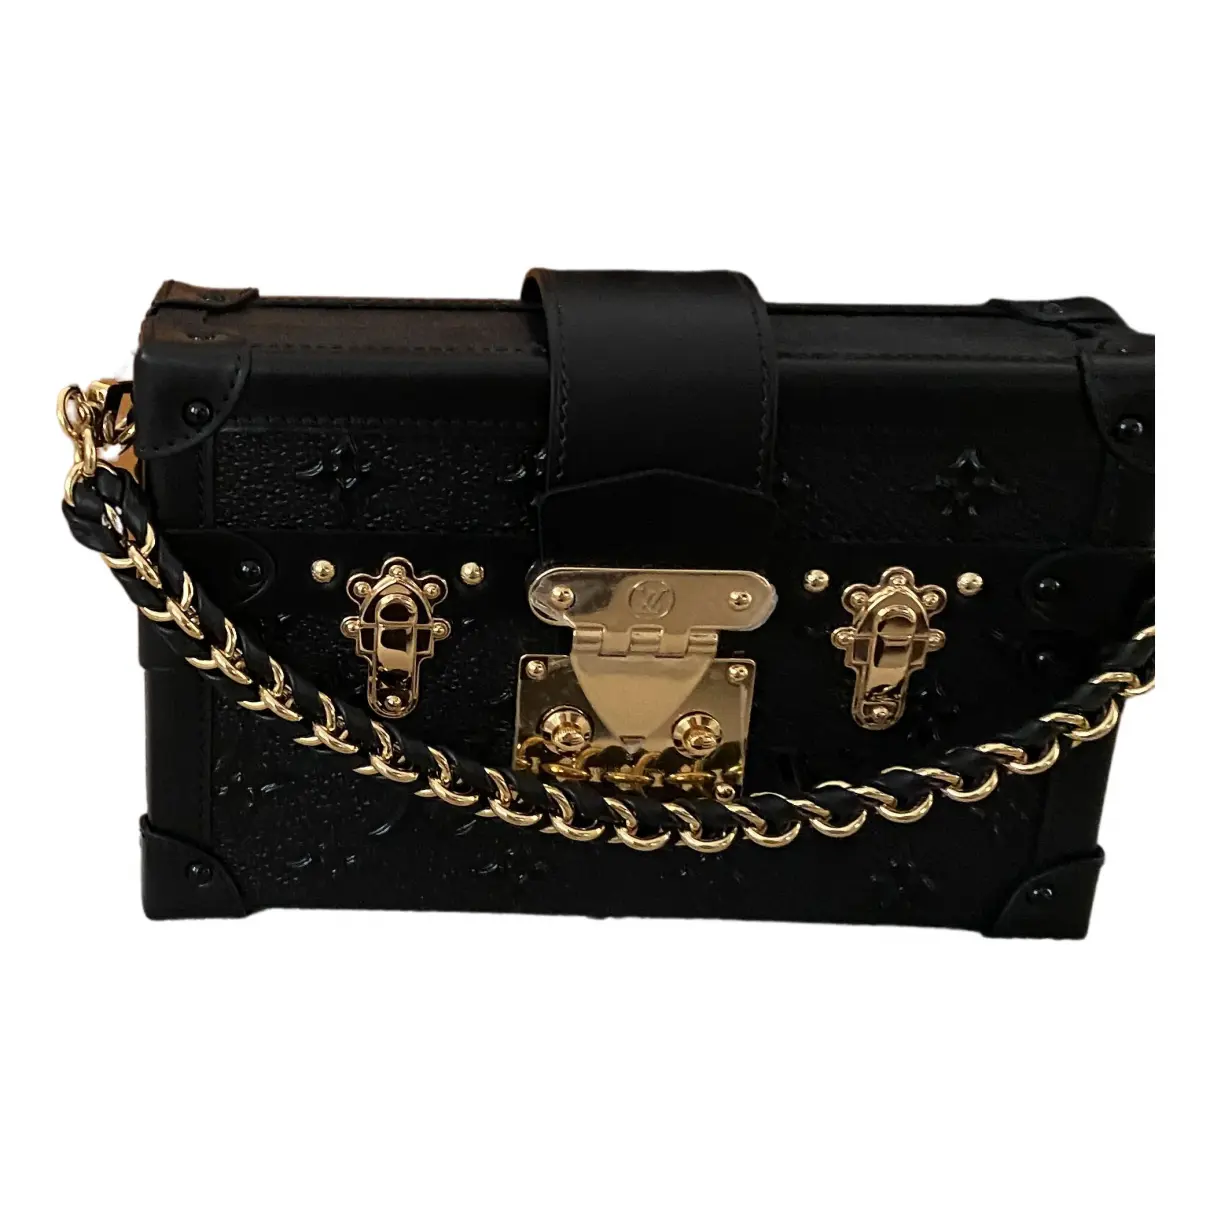 Petit Malle leather handbag Louis Vuitton